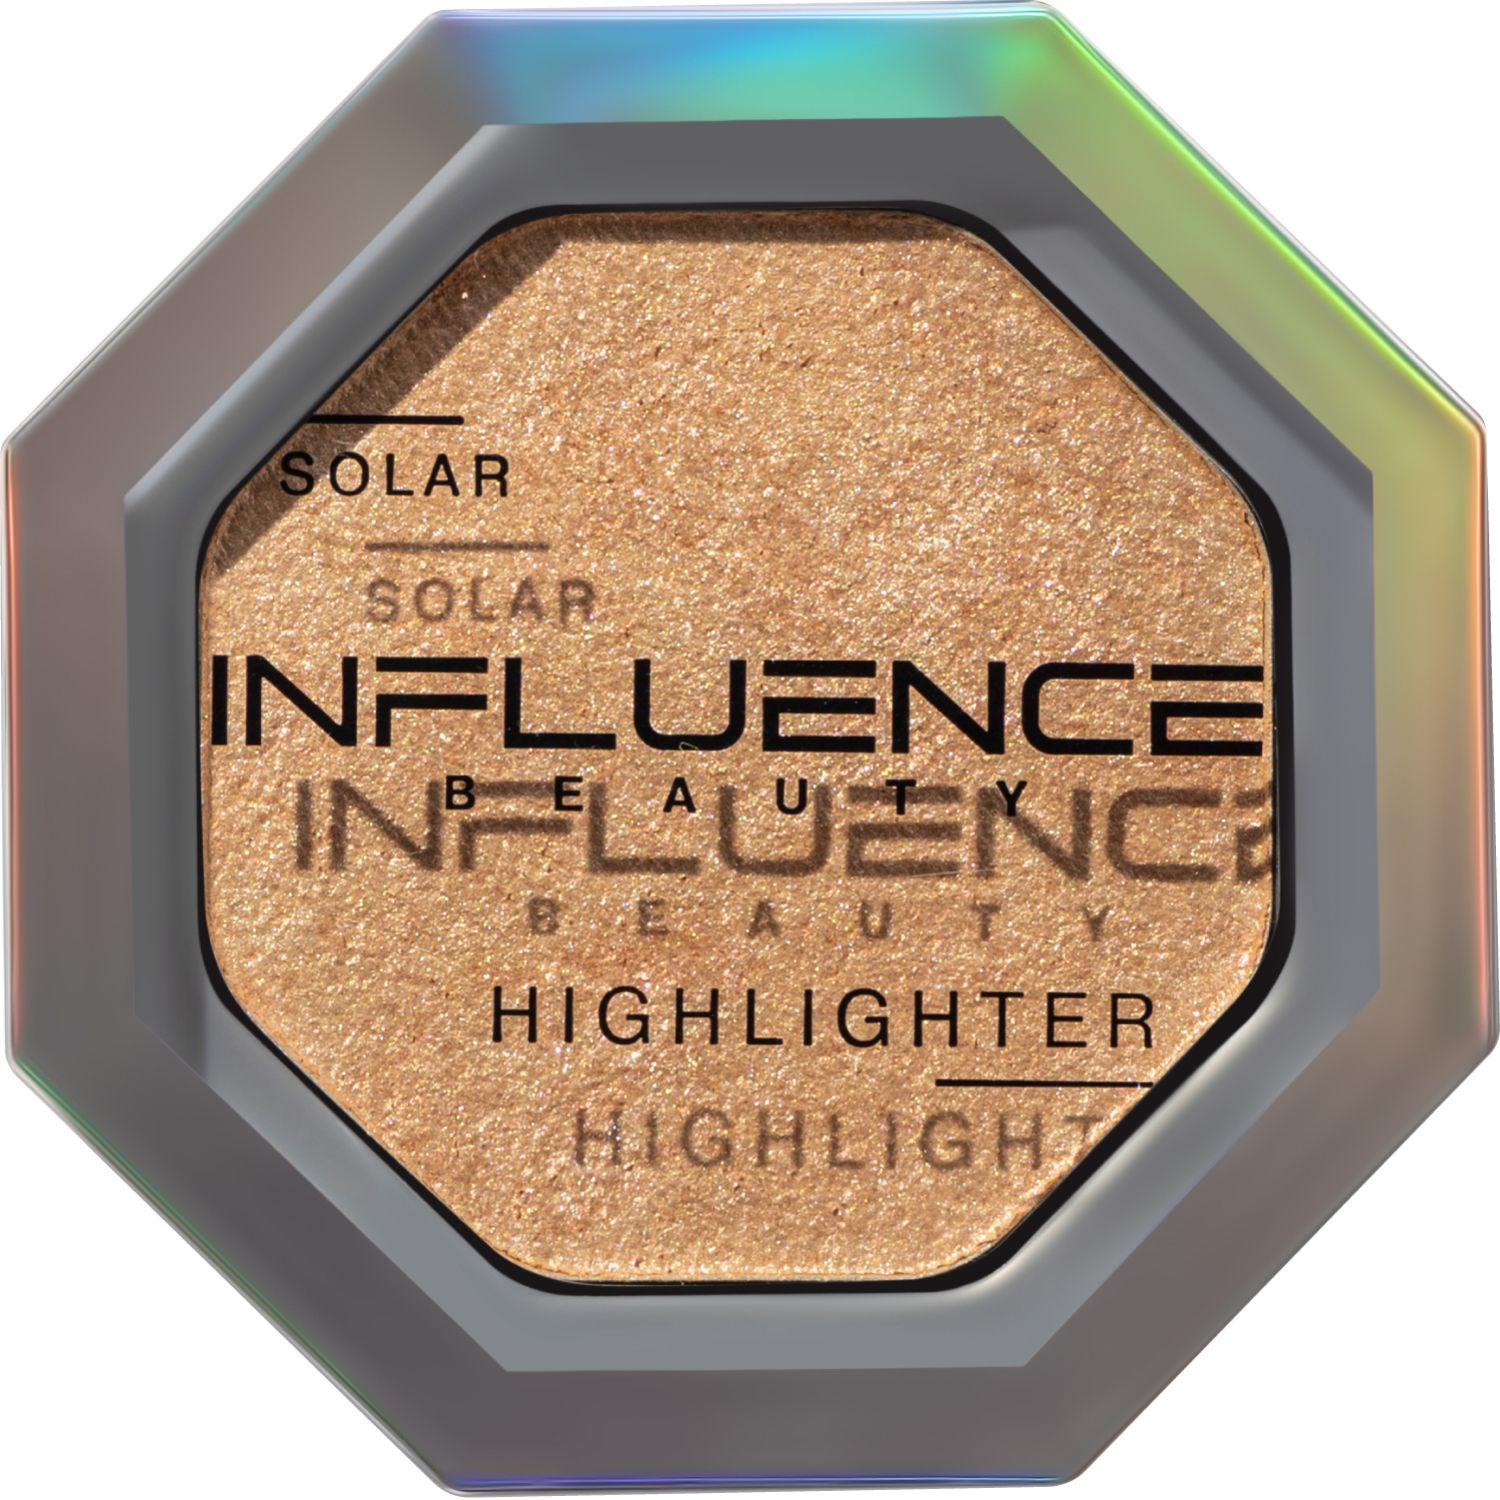 Хайлайтер Influence Beauty SOLAR, эффект деликатного сияния, золотой, 4,8 г хайлайтер influence beauty lunar эффект деликатного сияния серебряный 4 8 г